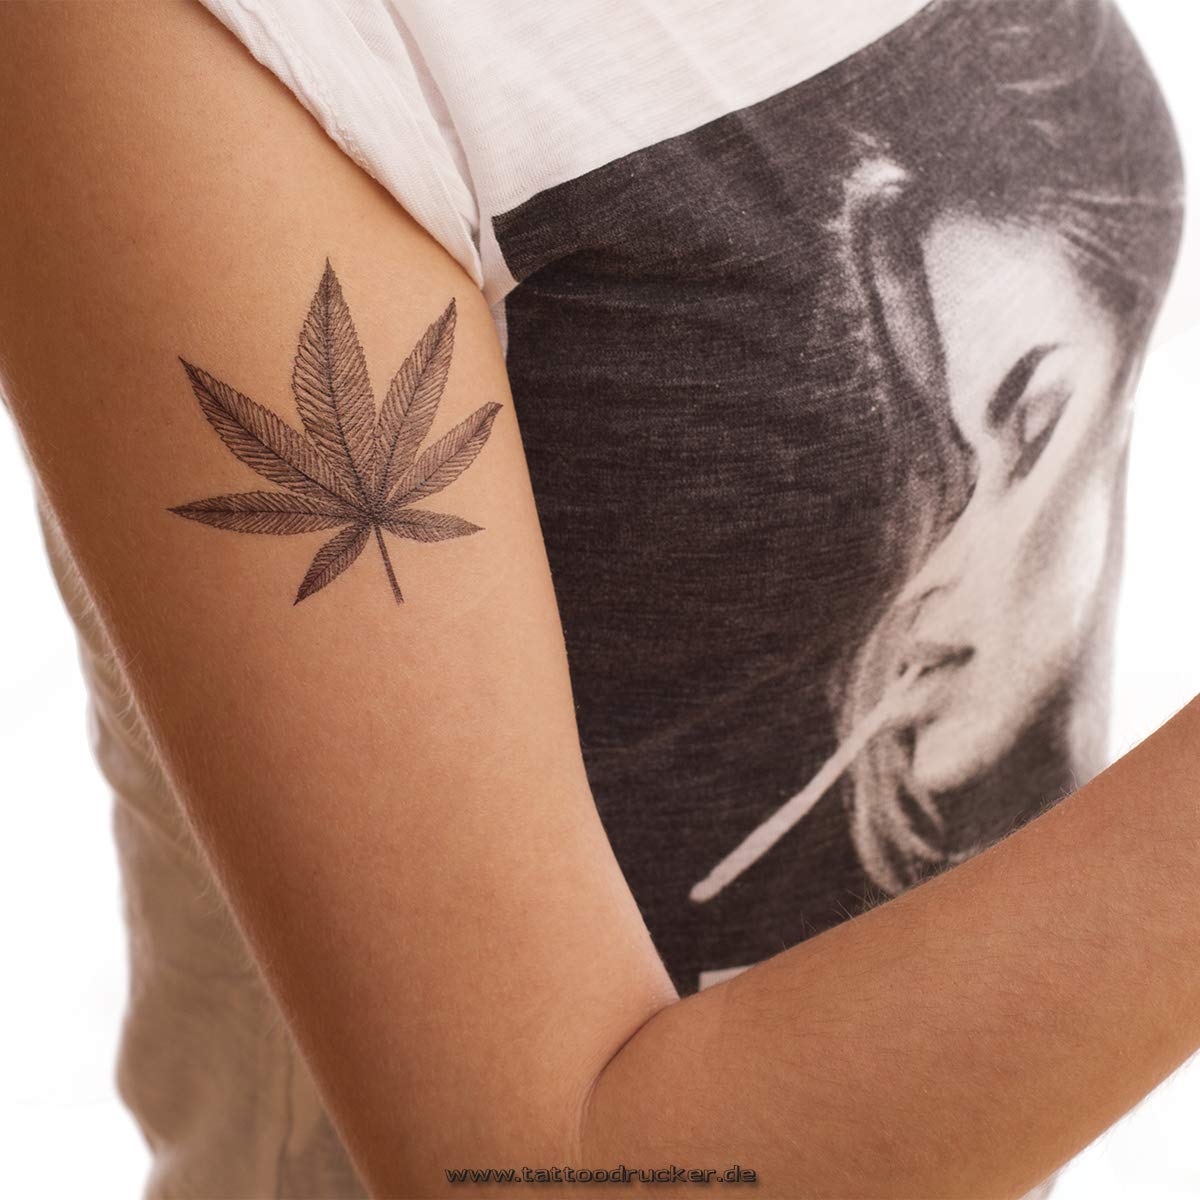 2 x Marijuana Tattoo in black - Hemp Leaf temporary Tattoo